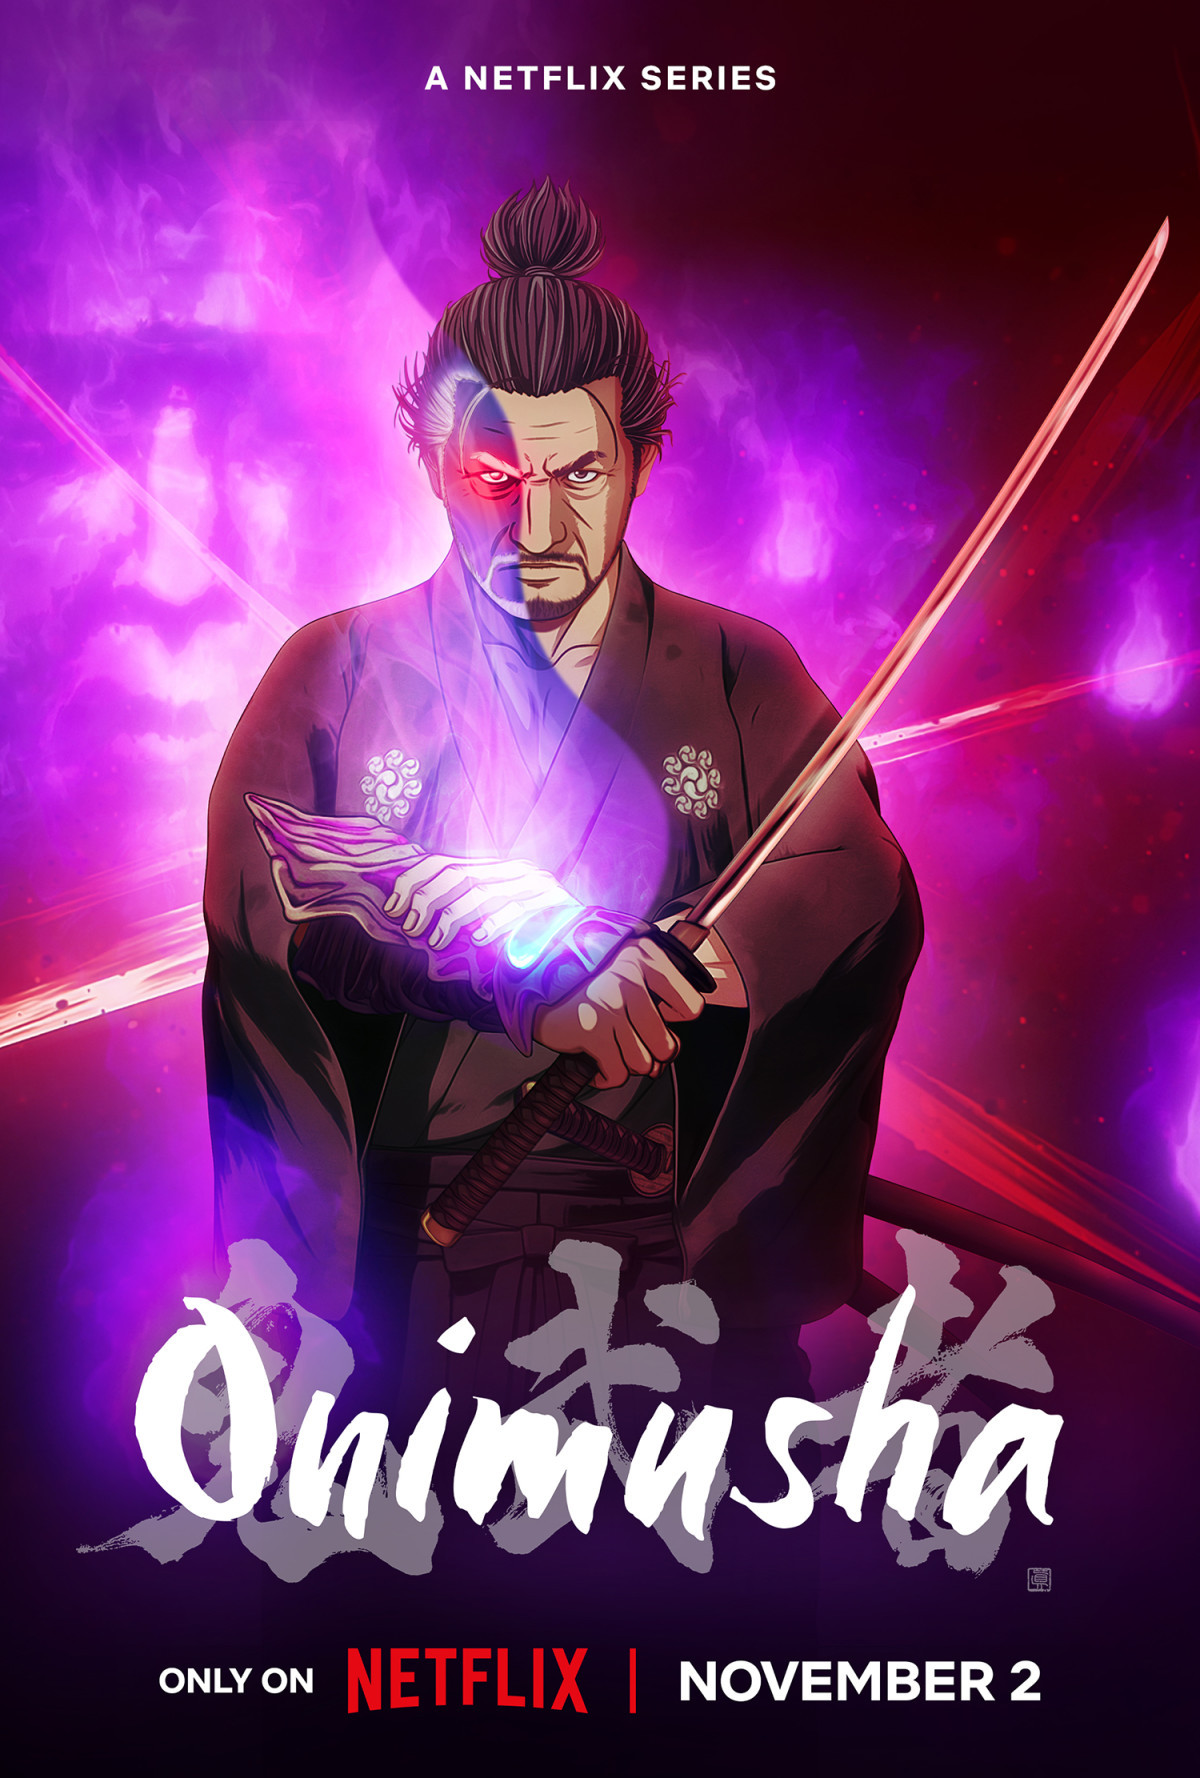 Affiche de l'anime Onimusha sur Netflix